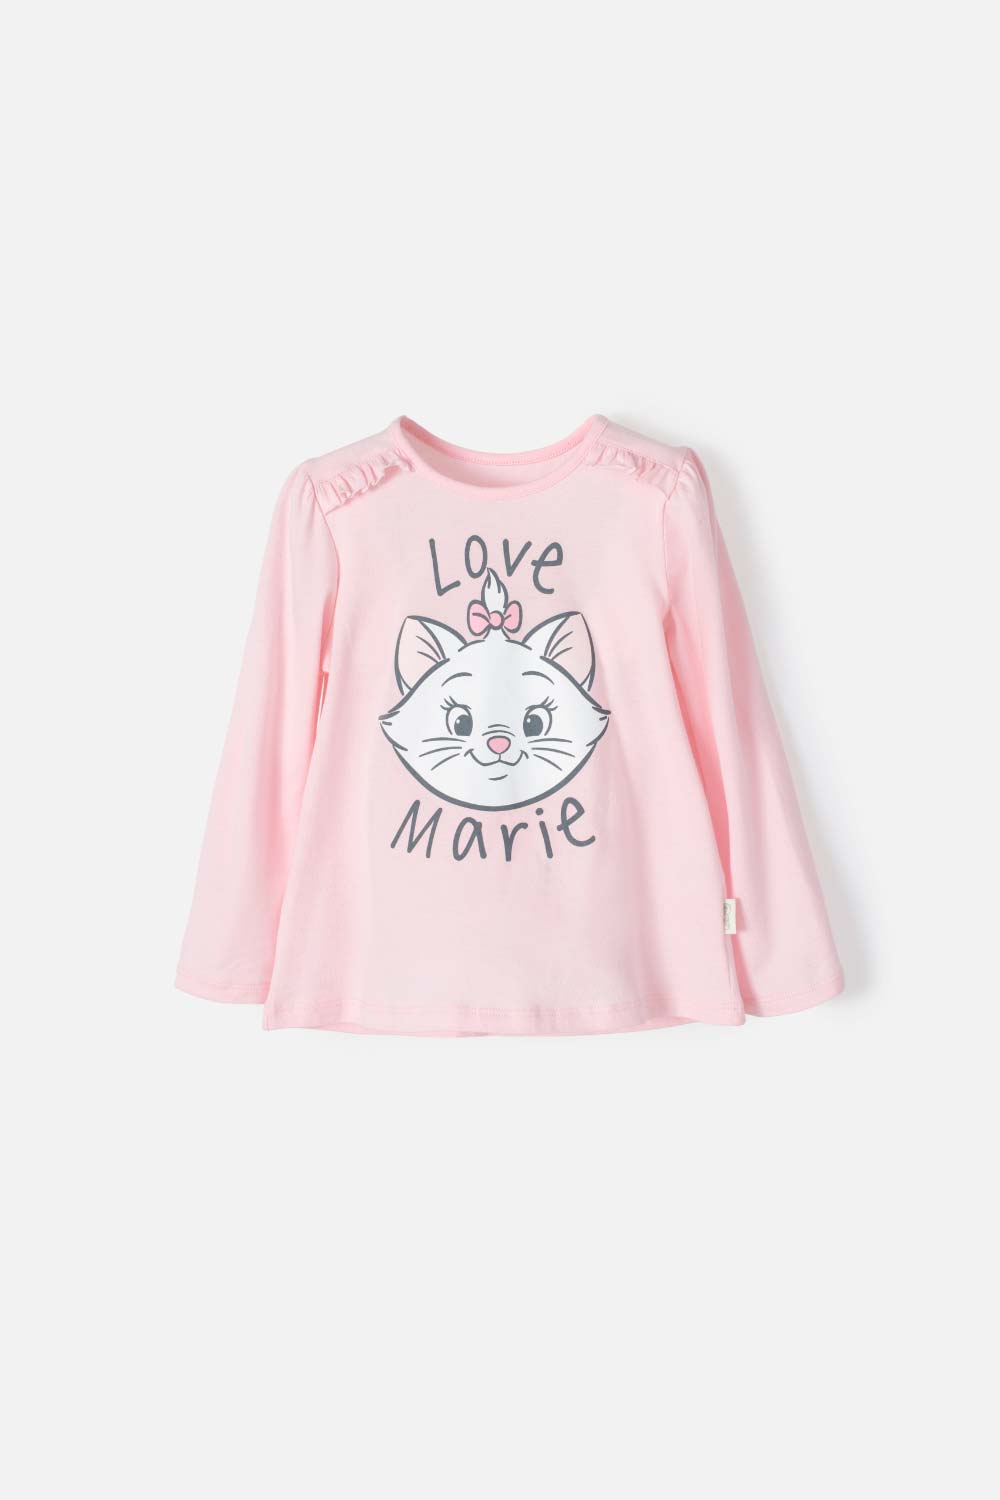 Camiseta rosa intenso gato-princesa niña